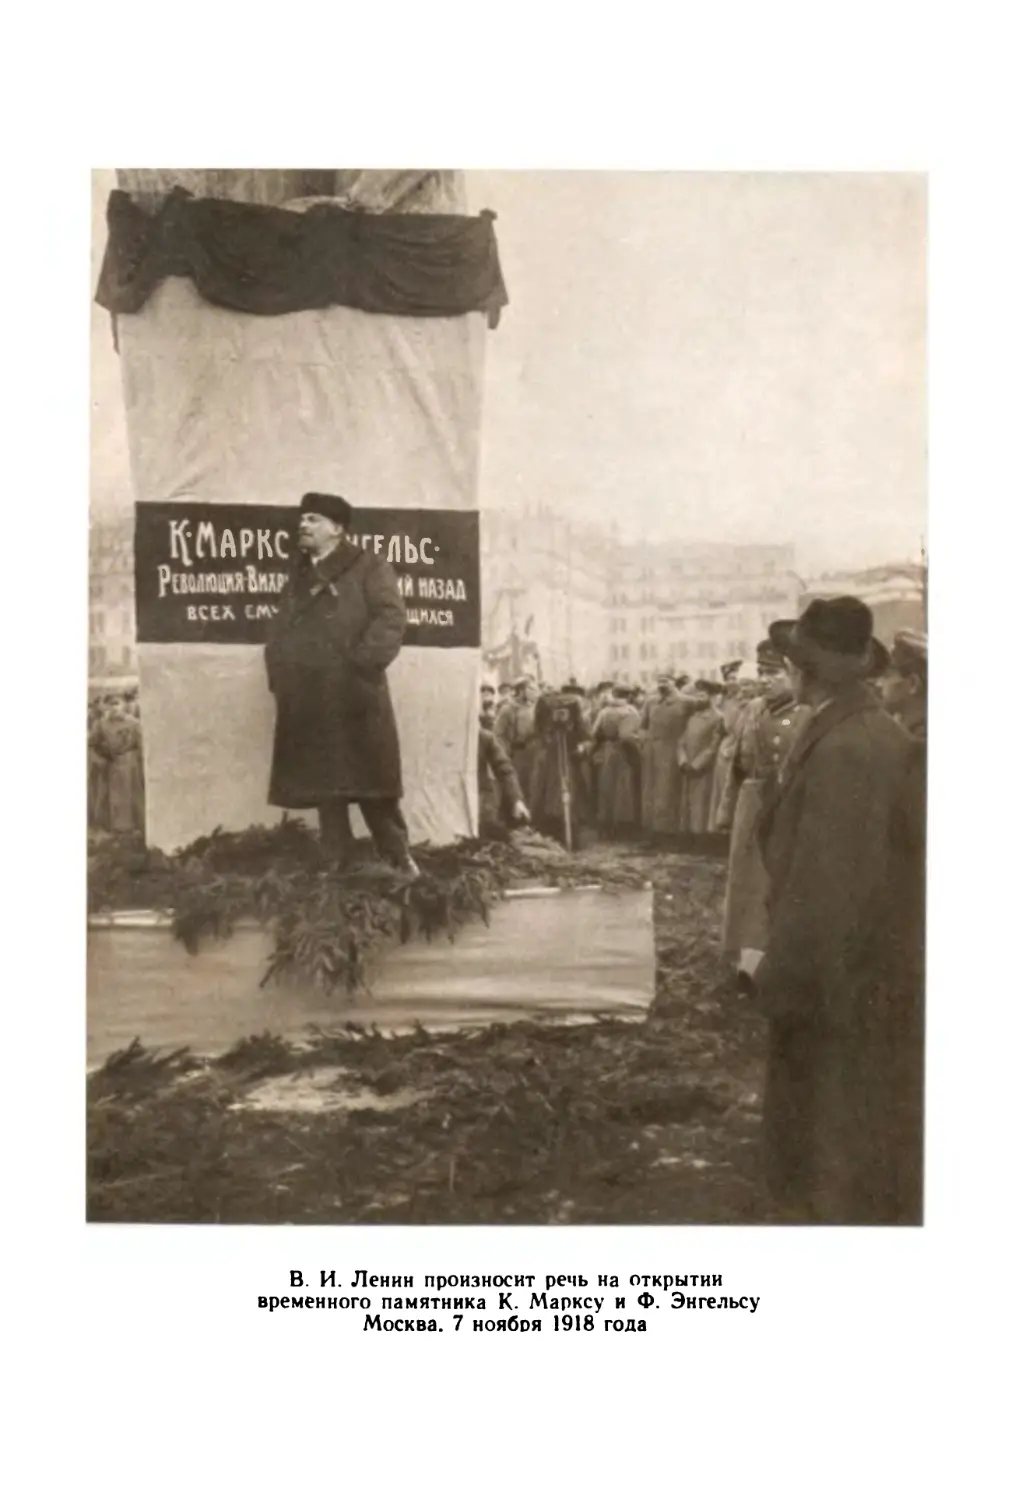 Фото: В. И. Ленин на открытии памятника К. Марксу и Ф. Энгельсу. Москва, 7 ноября 1918 г.